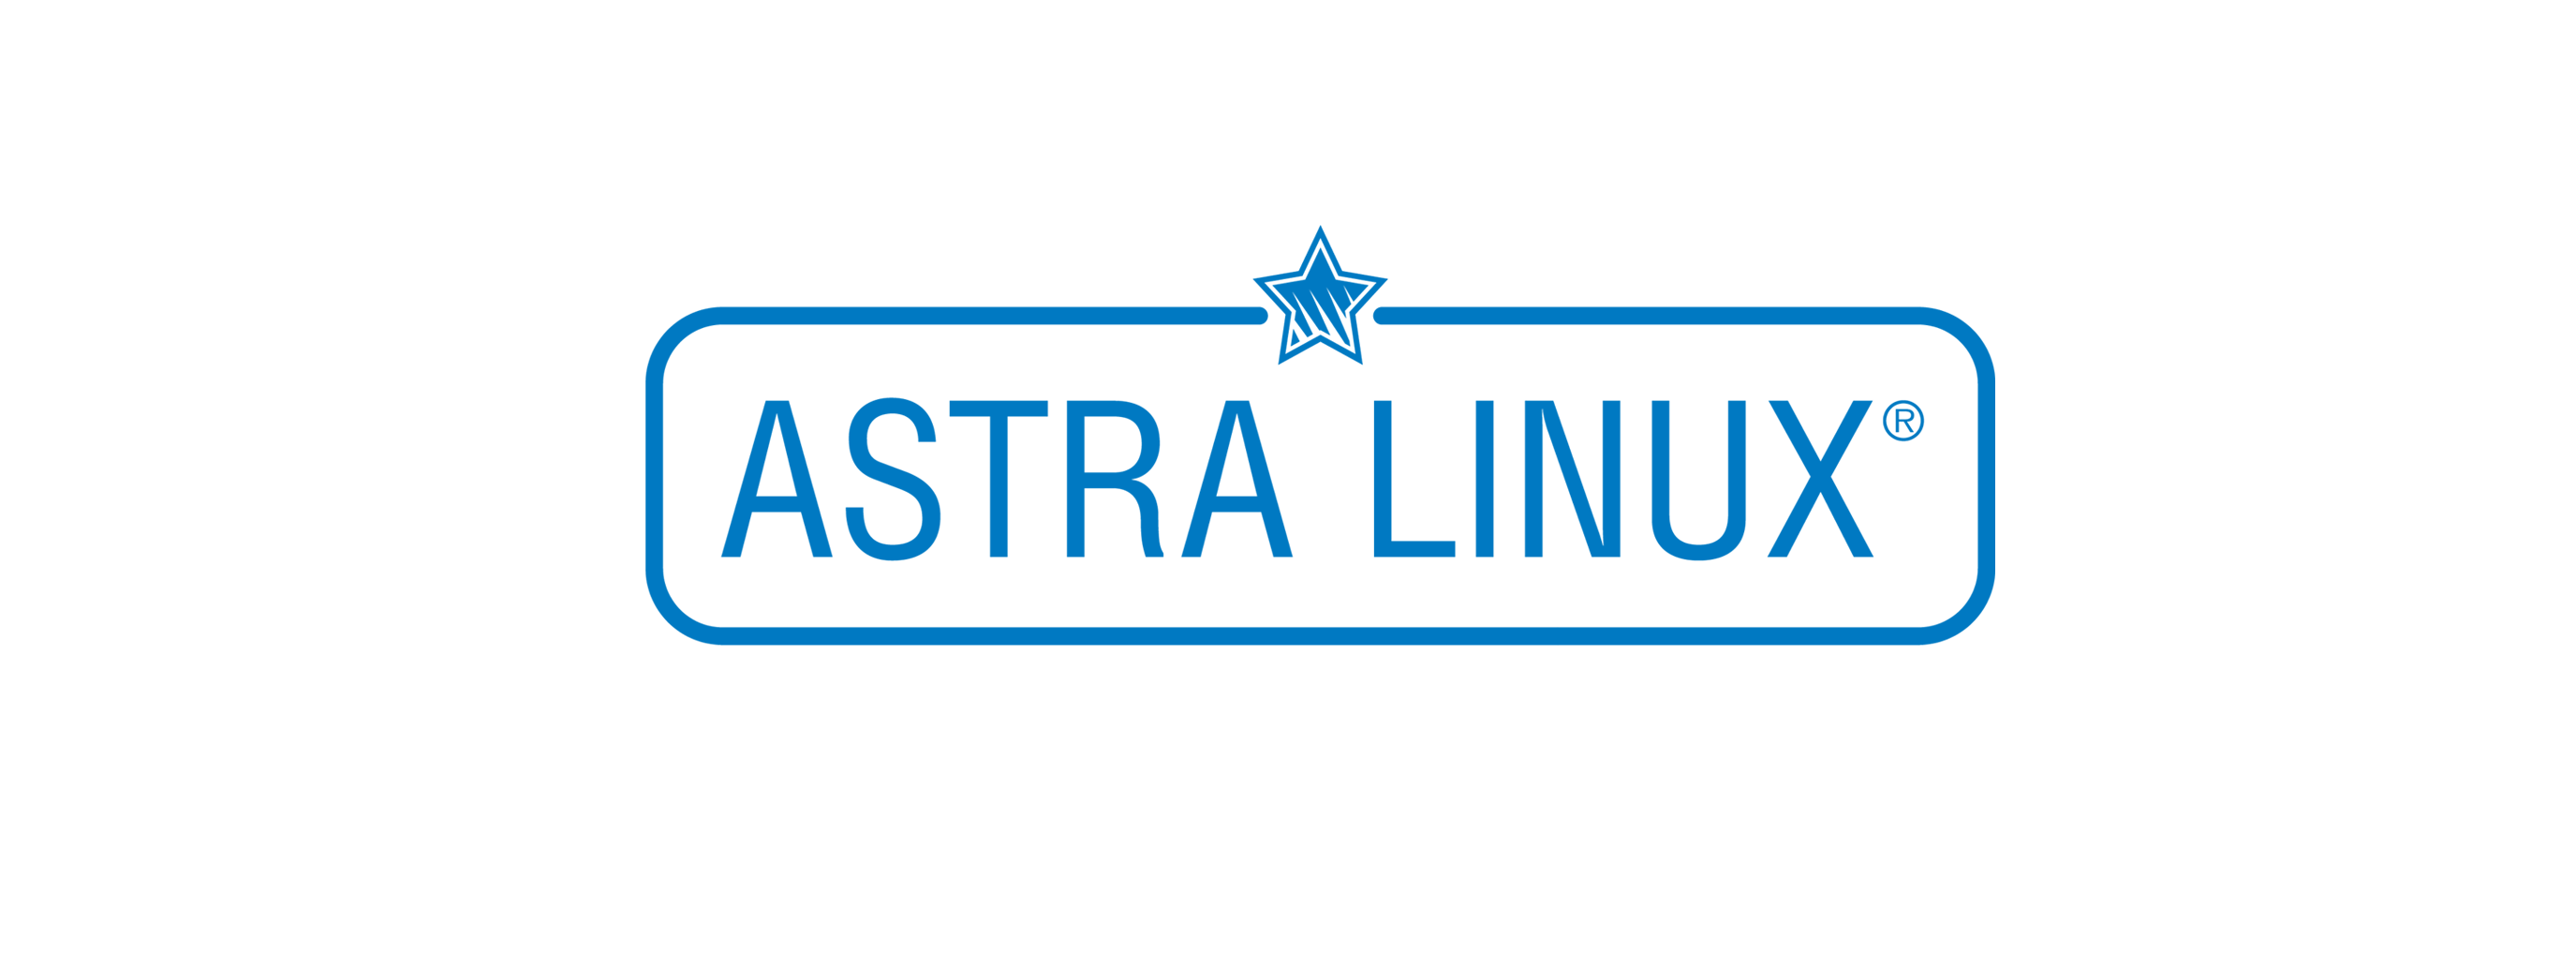 Лицензия РусБИТех Astra Linux Special Edition РУСБ.10015-16 исполнение 1 (Смоленск) ФСБ, Russian, на срок действия исключительного права базовая лицензия для рабочей станции, BOX (OS121300016BOX000WS01-SO12) Astra Linux Special Edition РУСБ.10015-16 исполнение 1 (Смоленск) ФСБ - фото 1